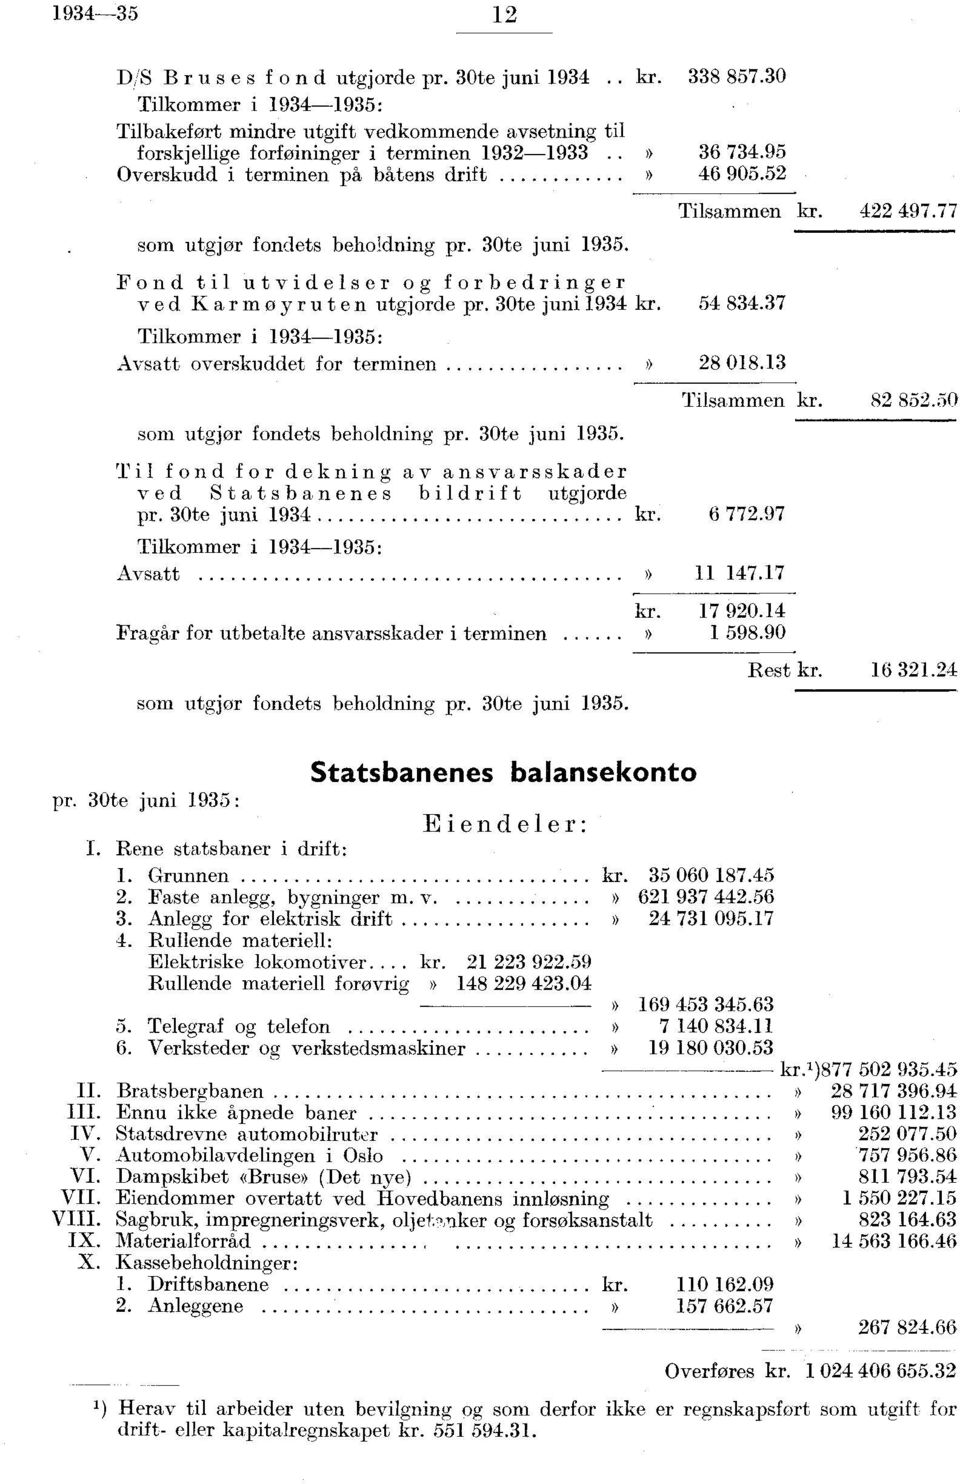 30te juni 935. Fond til utvidelser og forbedringer ved Karmøyruten utgjorde pr. 30te juni 934 kr. Tilkommer i 934935: Avsatt overskuddet for terminen )) som utgjør fondets beholdning pr.